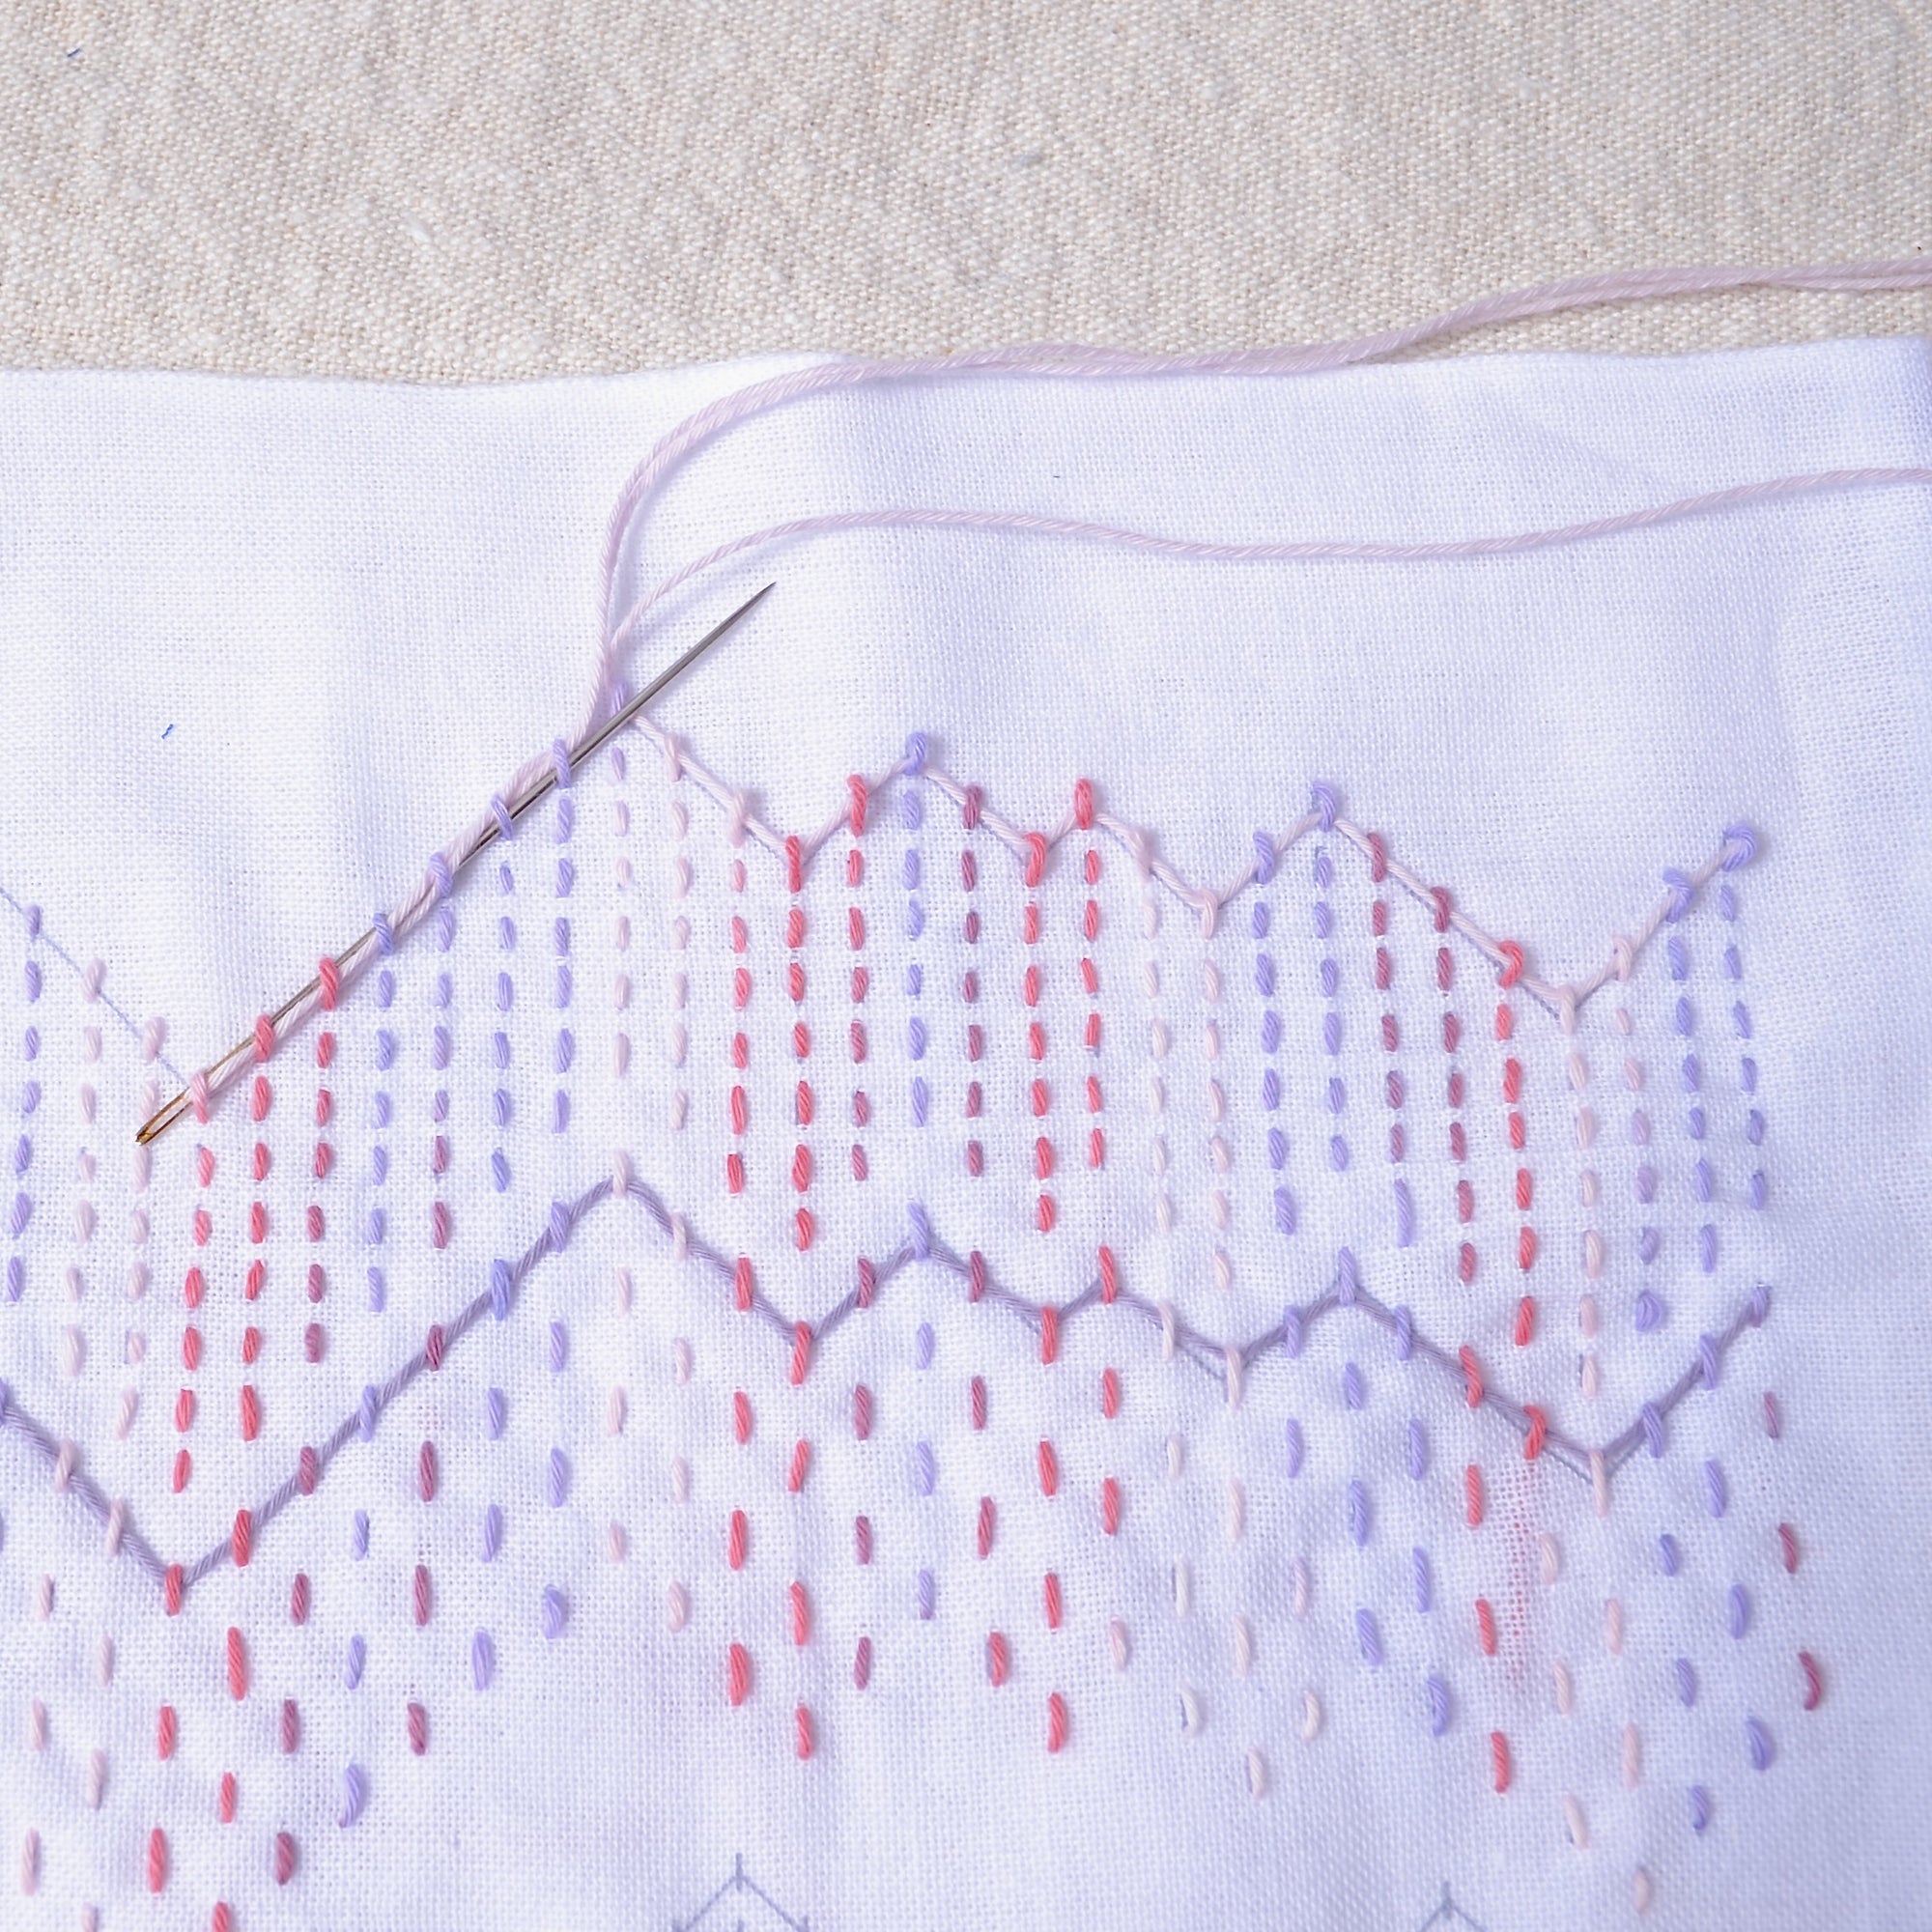 Weaving under stitches (kugurizashi) Sashiko Sampler, Textile Lab "Peaks" ready to stitch fabric